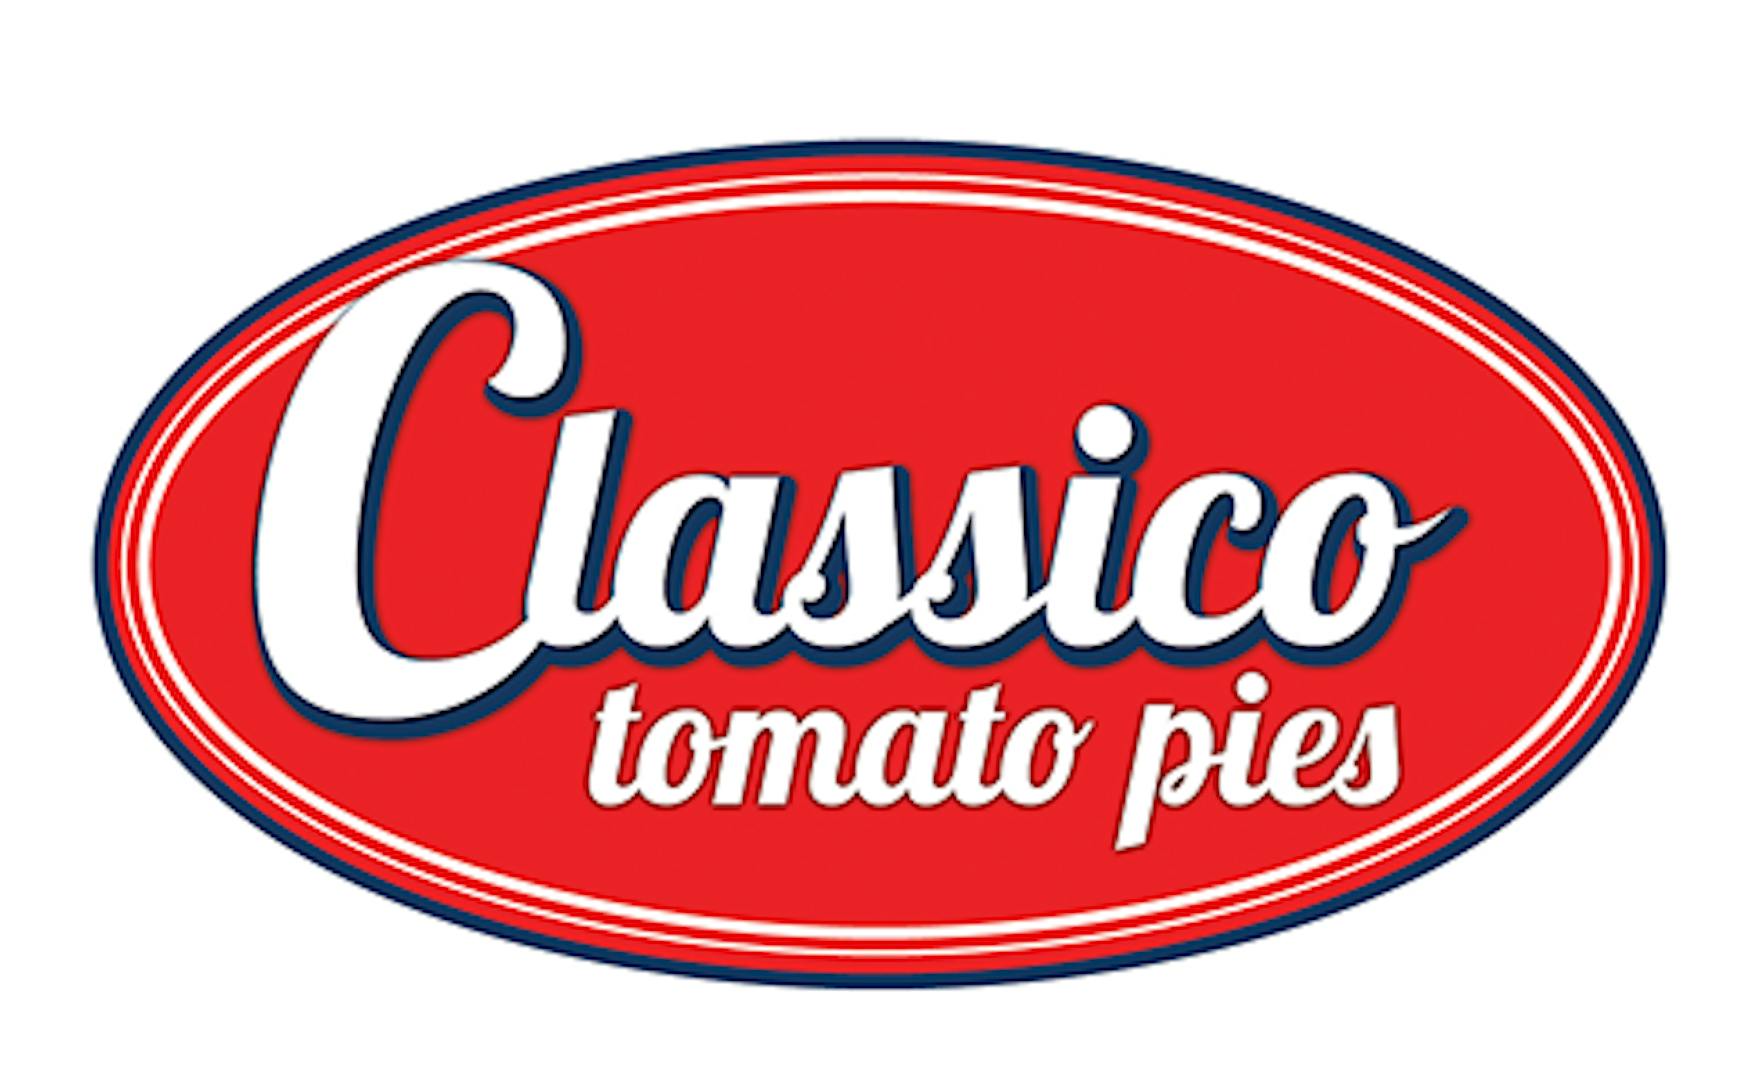 Classico Tomato Pies